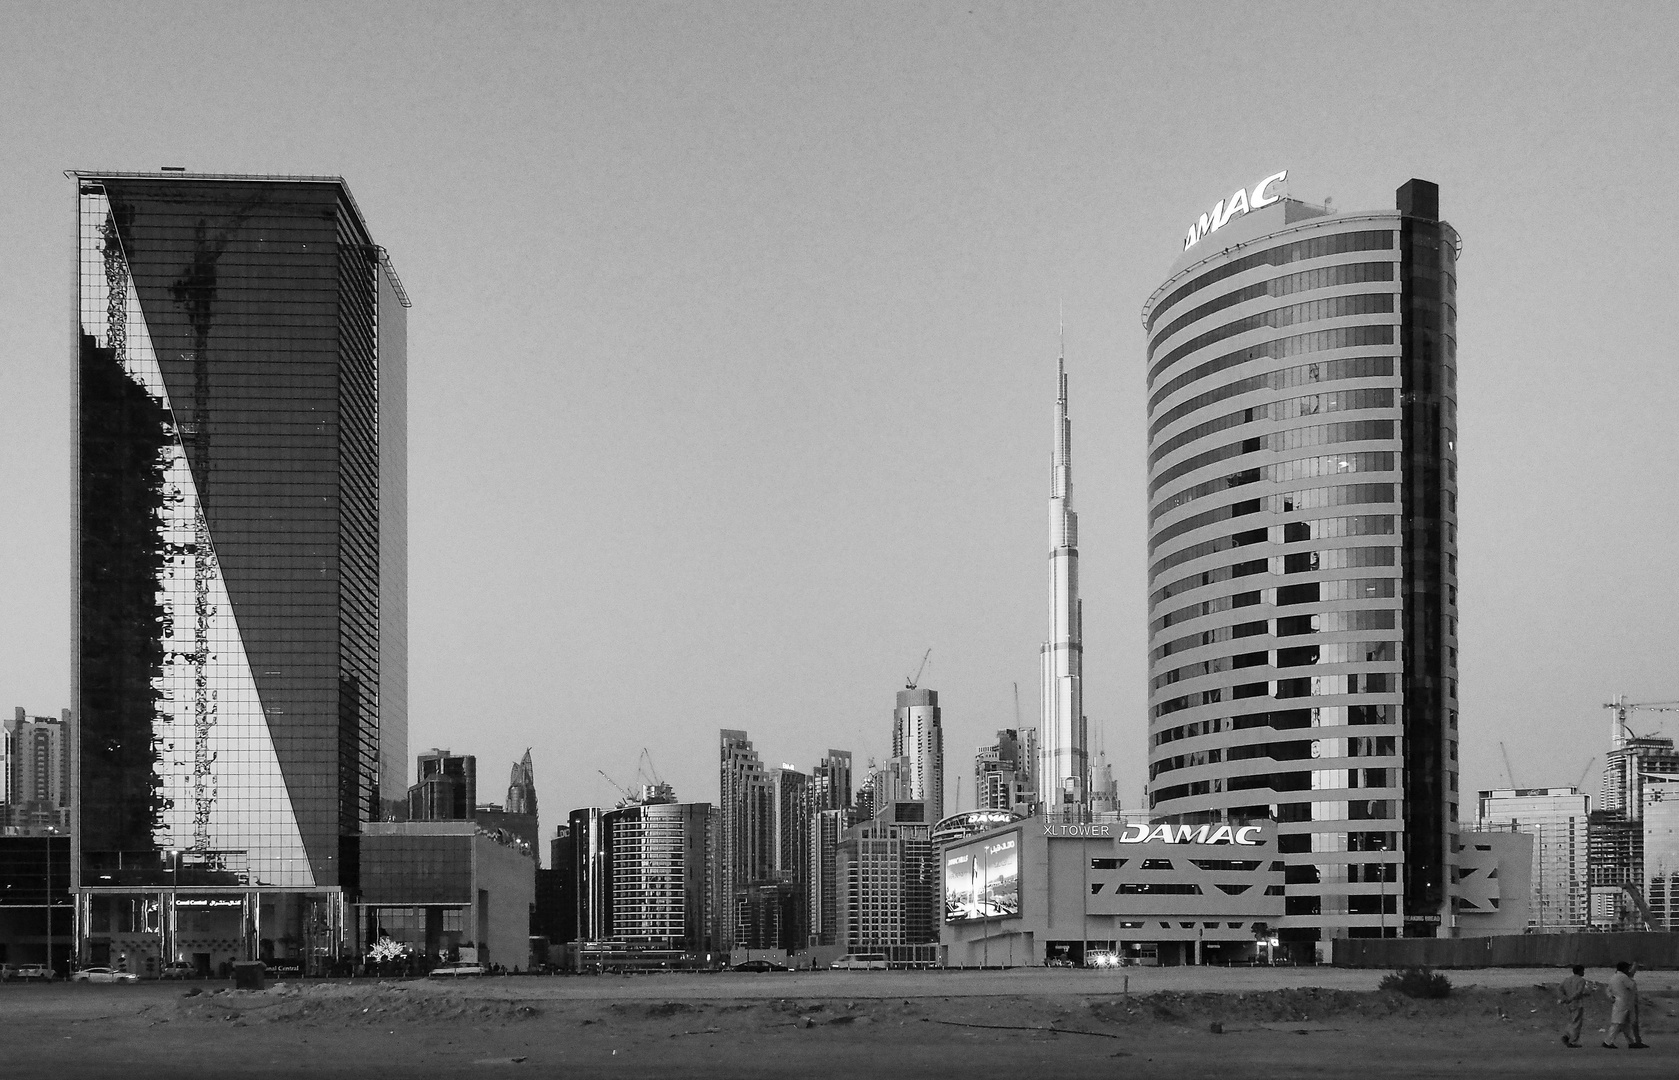 Un nouveau quartier à Dubaï